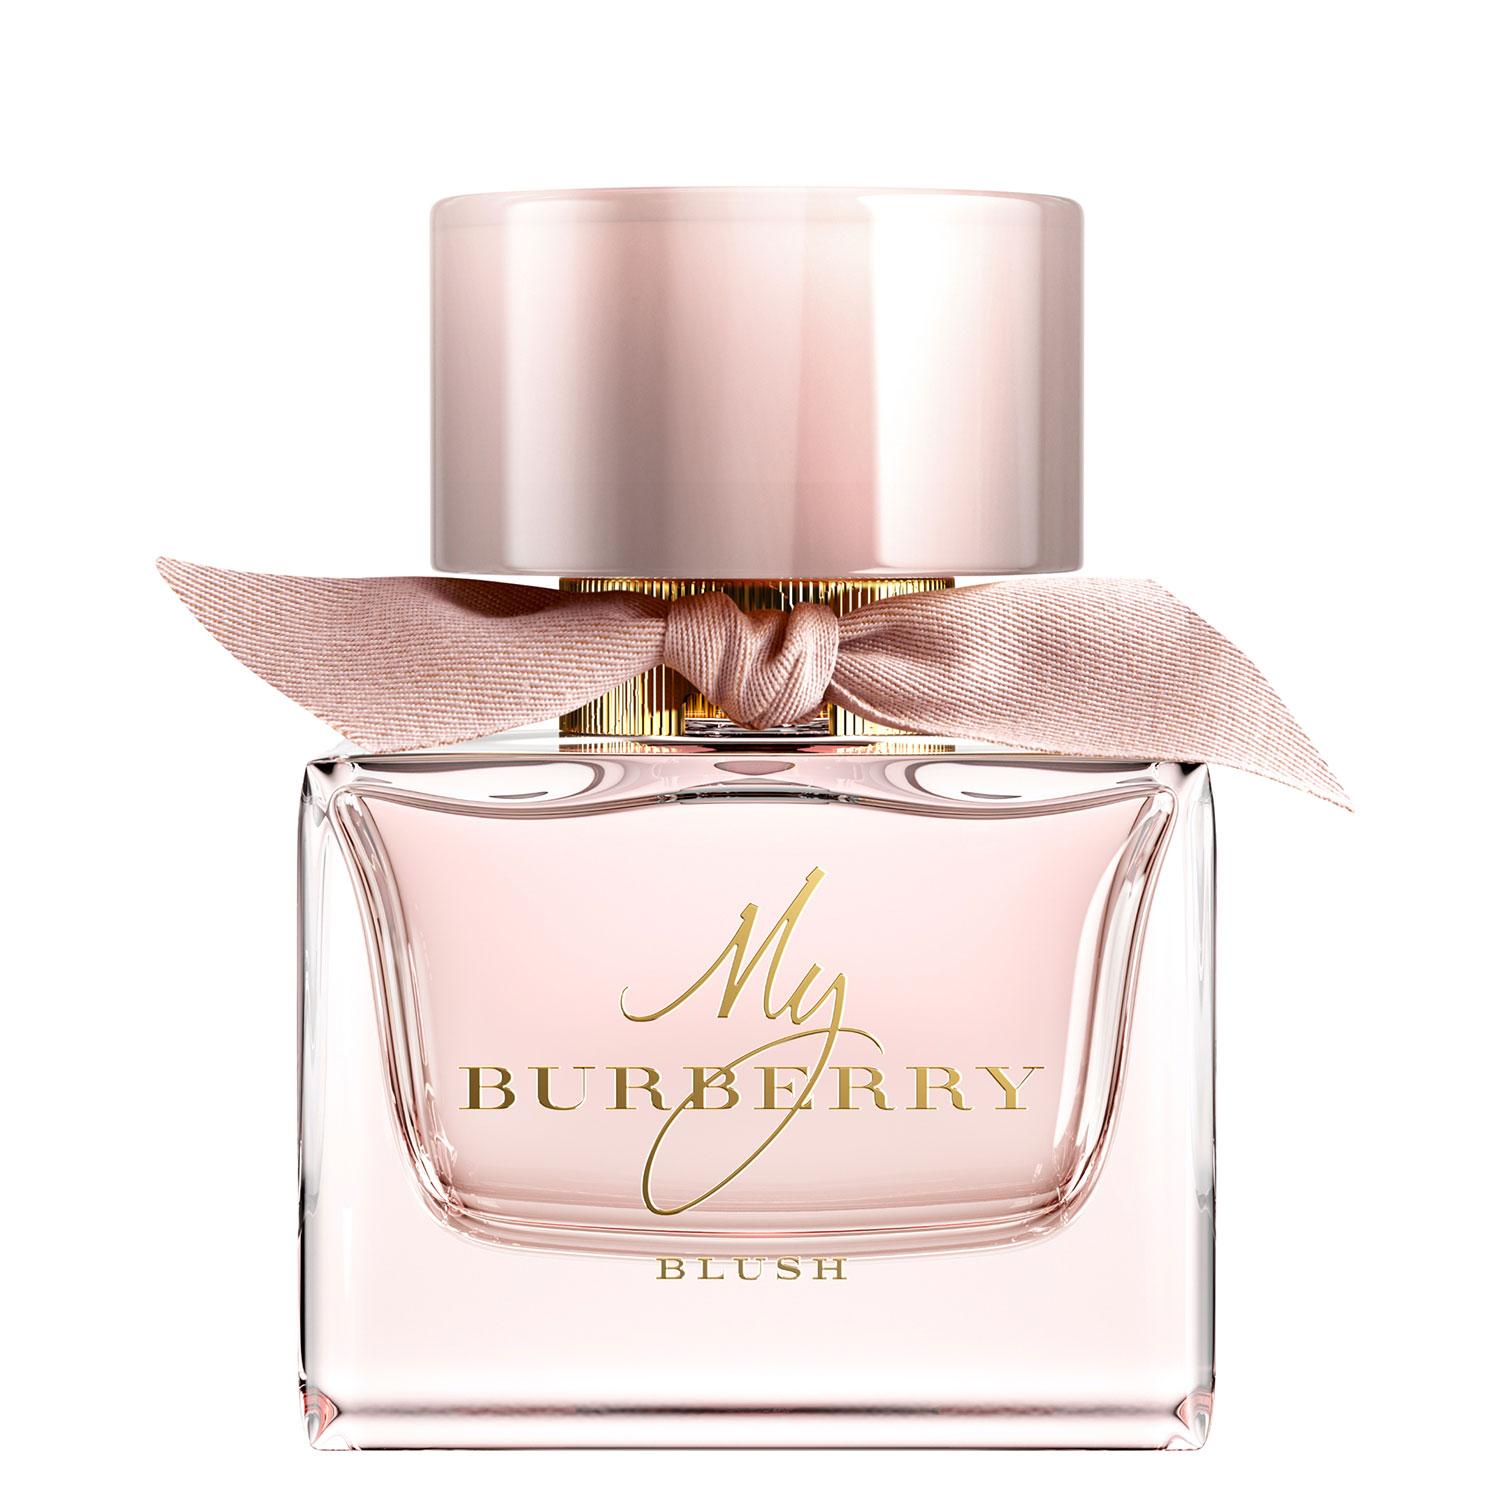 My Burberry - Blush Eau de Parfum